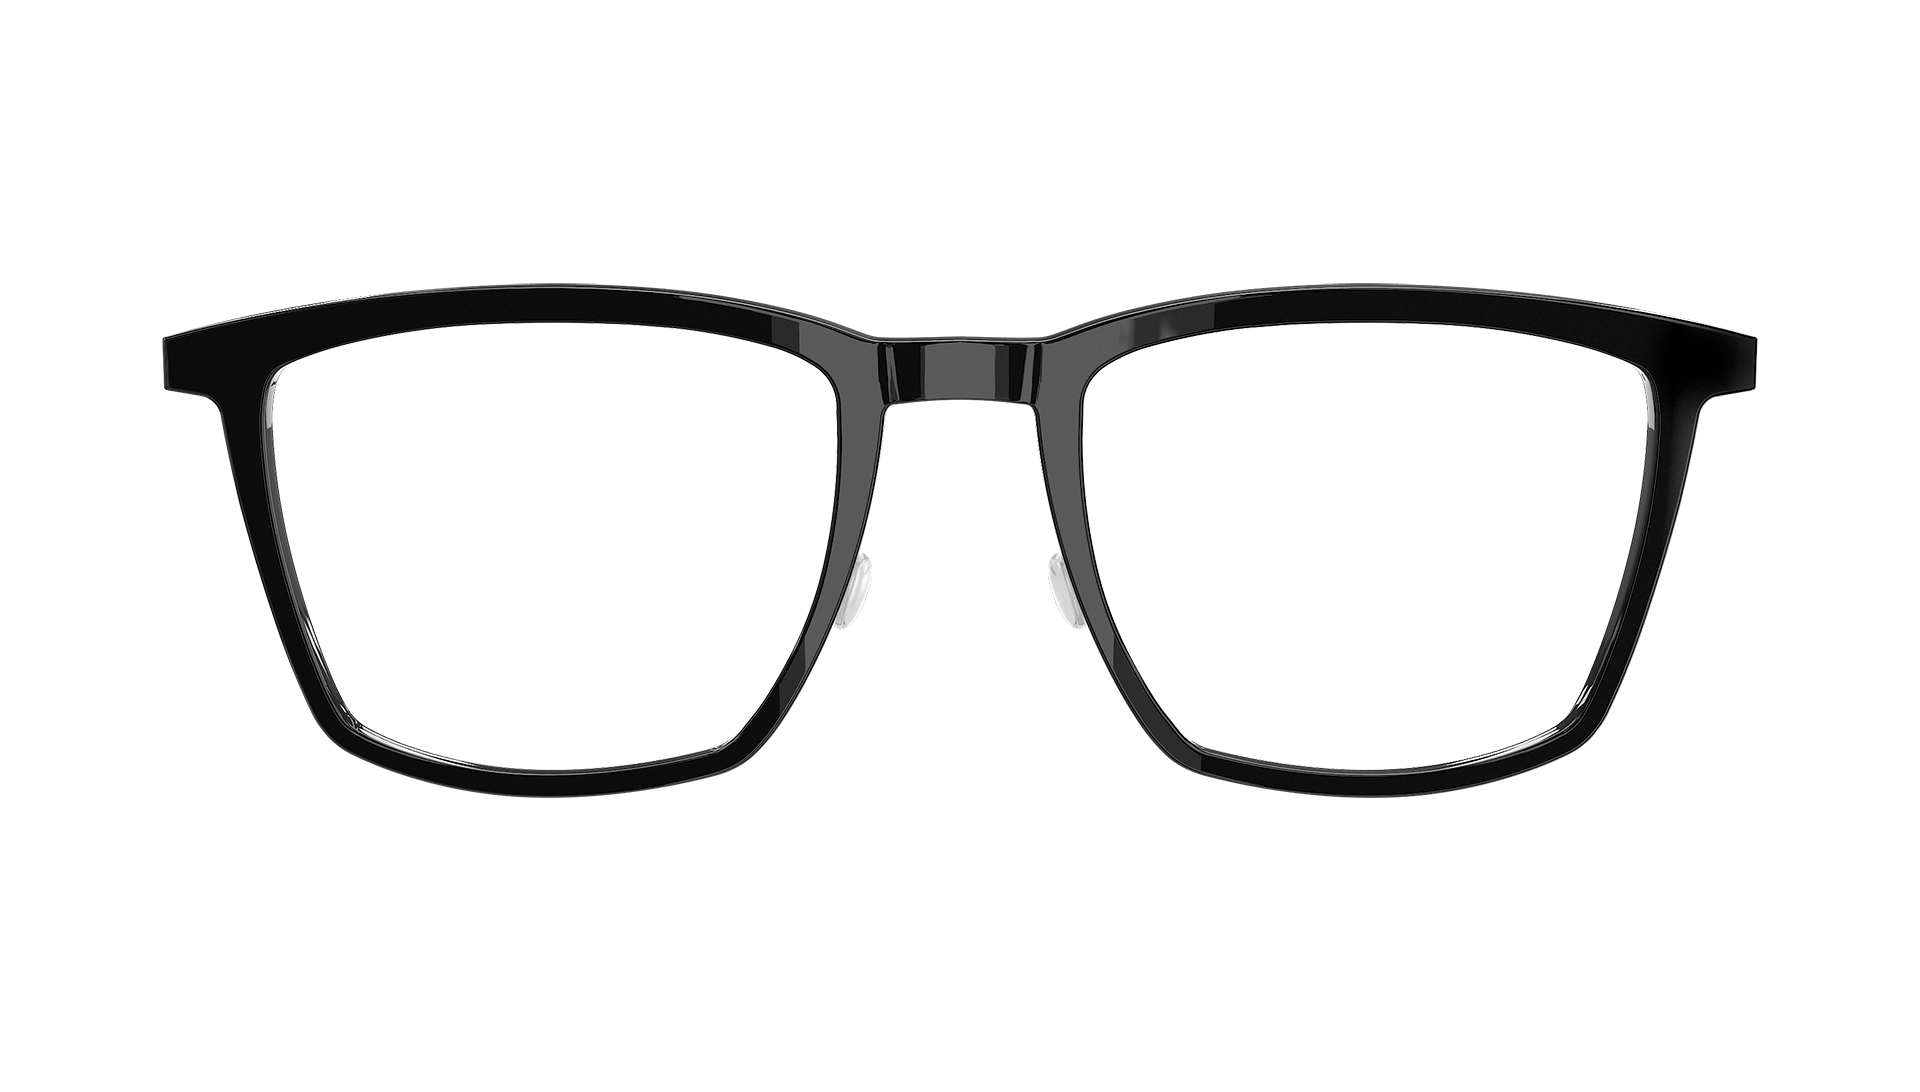 LINDBERG acetanium Model 1260 black acetate glasses with titanium temples in a square shape